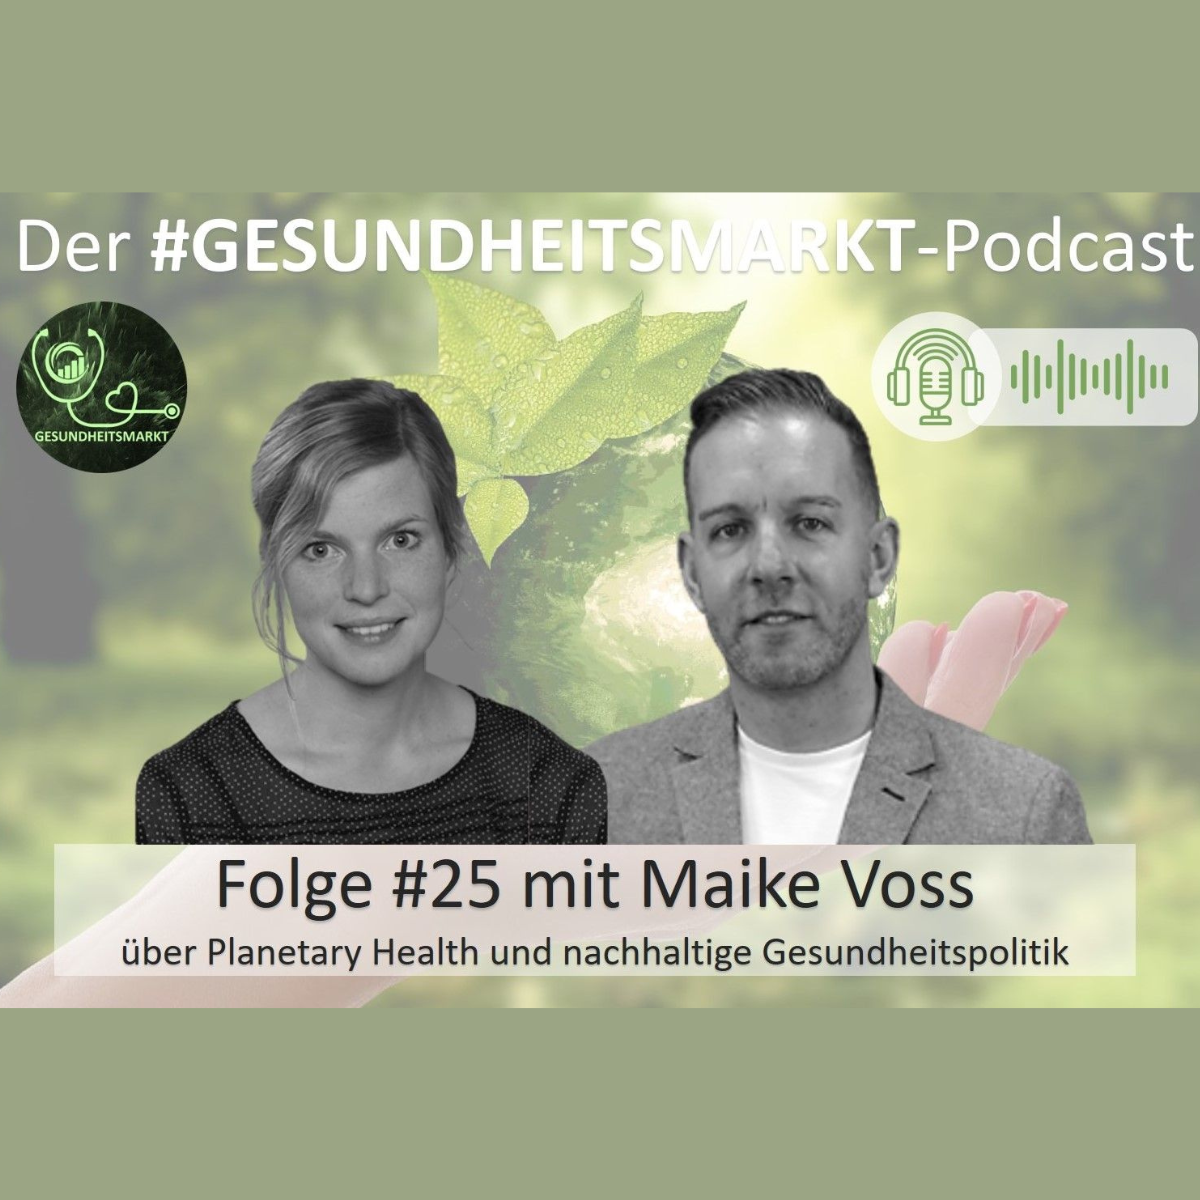 Podcast: Maike Voss spricht über Planetary Health und nachhaltige Gesundheitspolitik